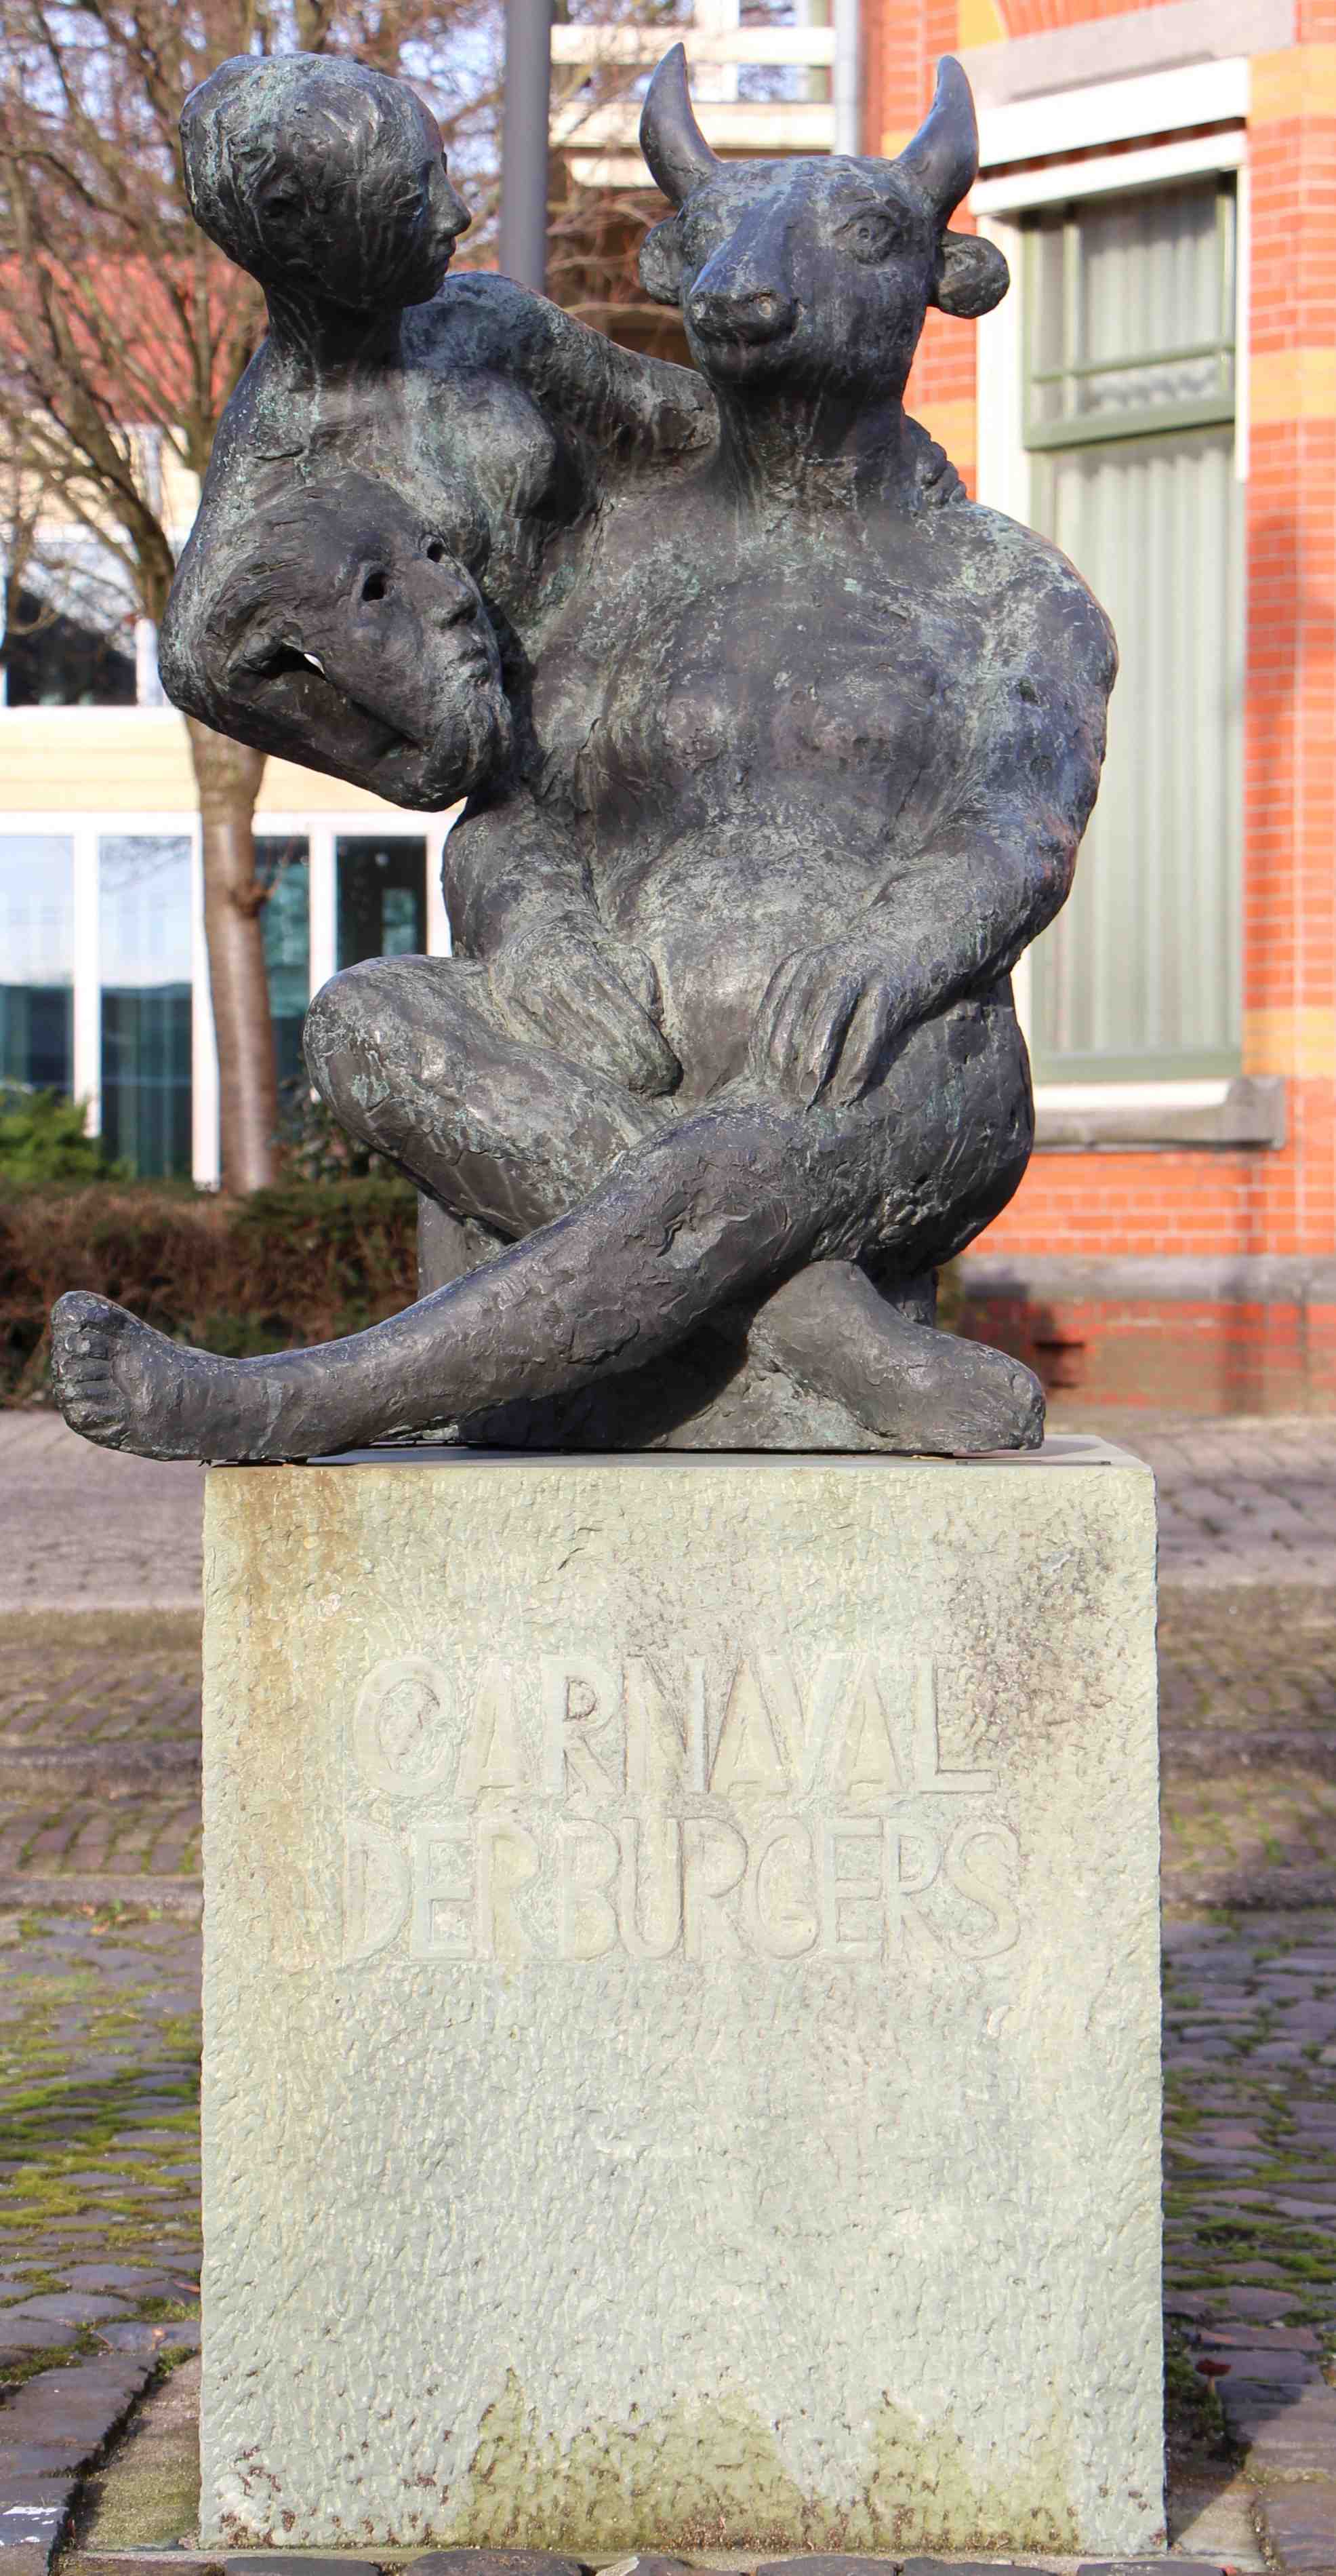 Carnaval der burgers, beeld bij het voormalige gemeentehuis ('villa Smits') van Eibergen.